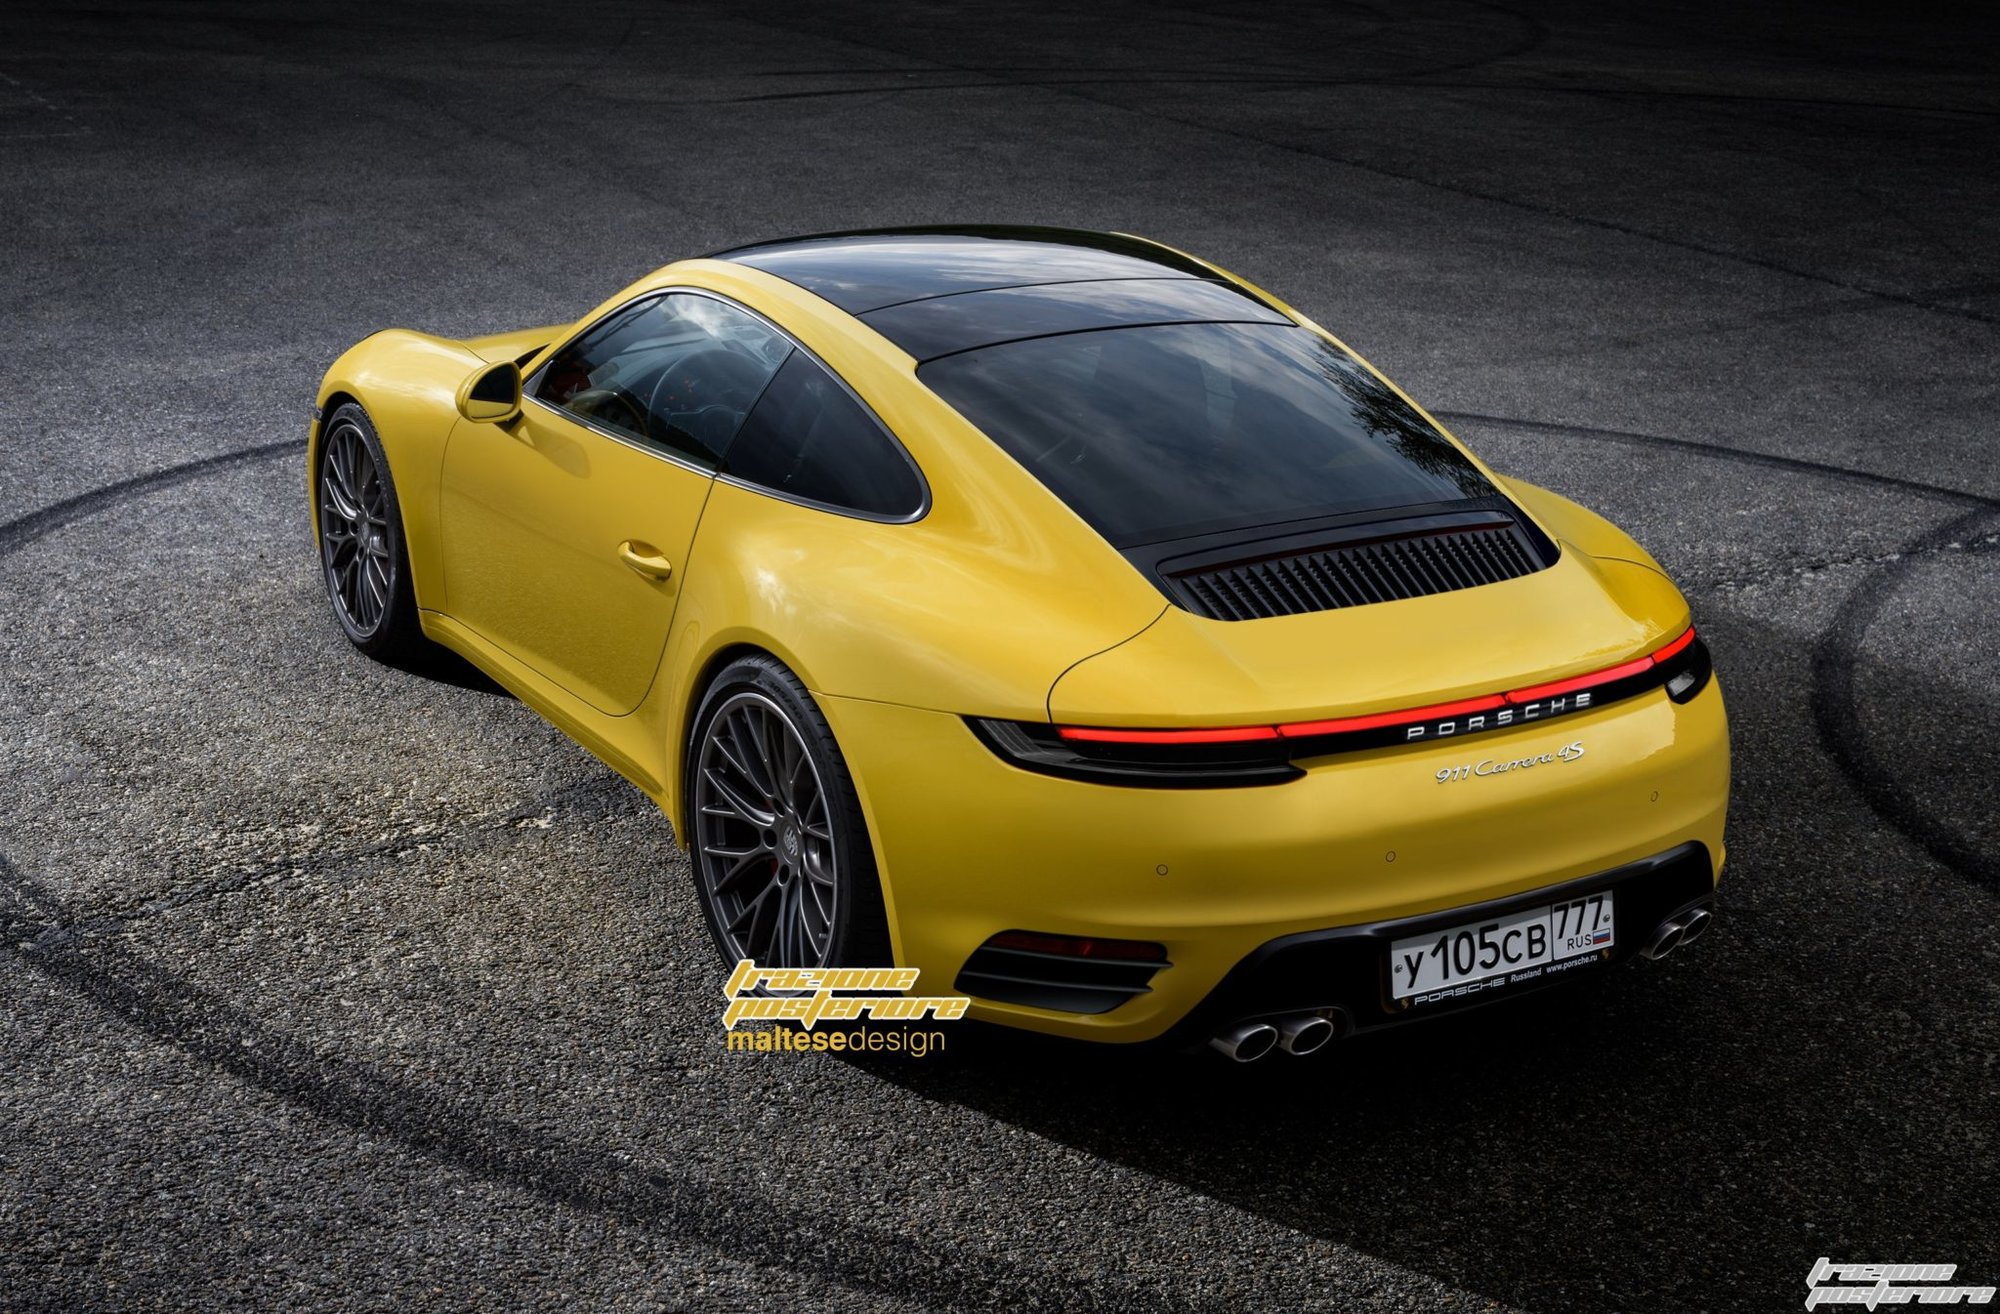 Bude vypadat nové Porsche 911 takhle?